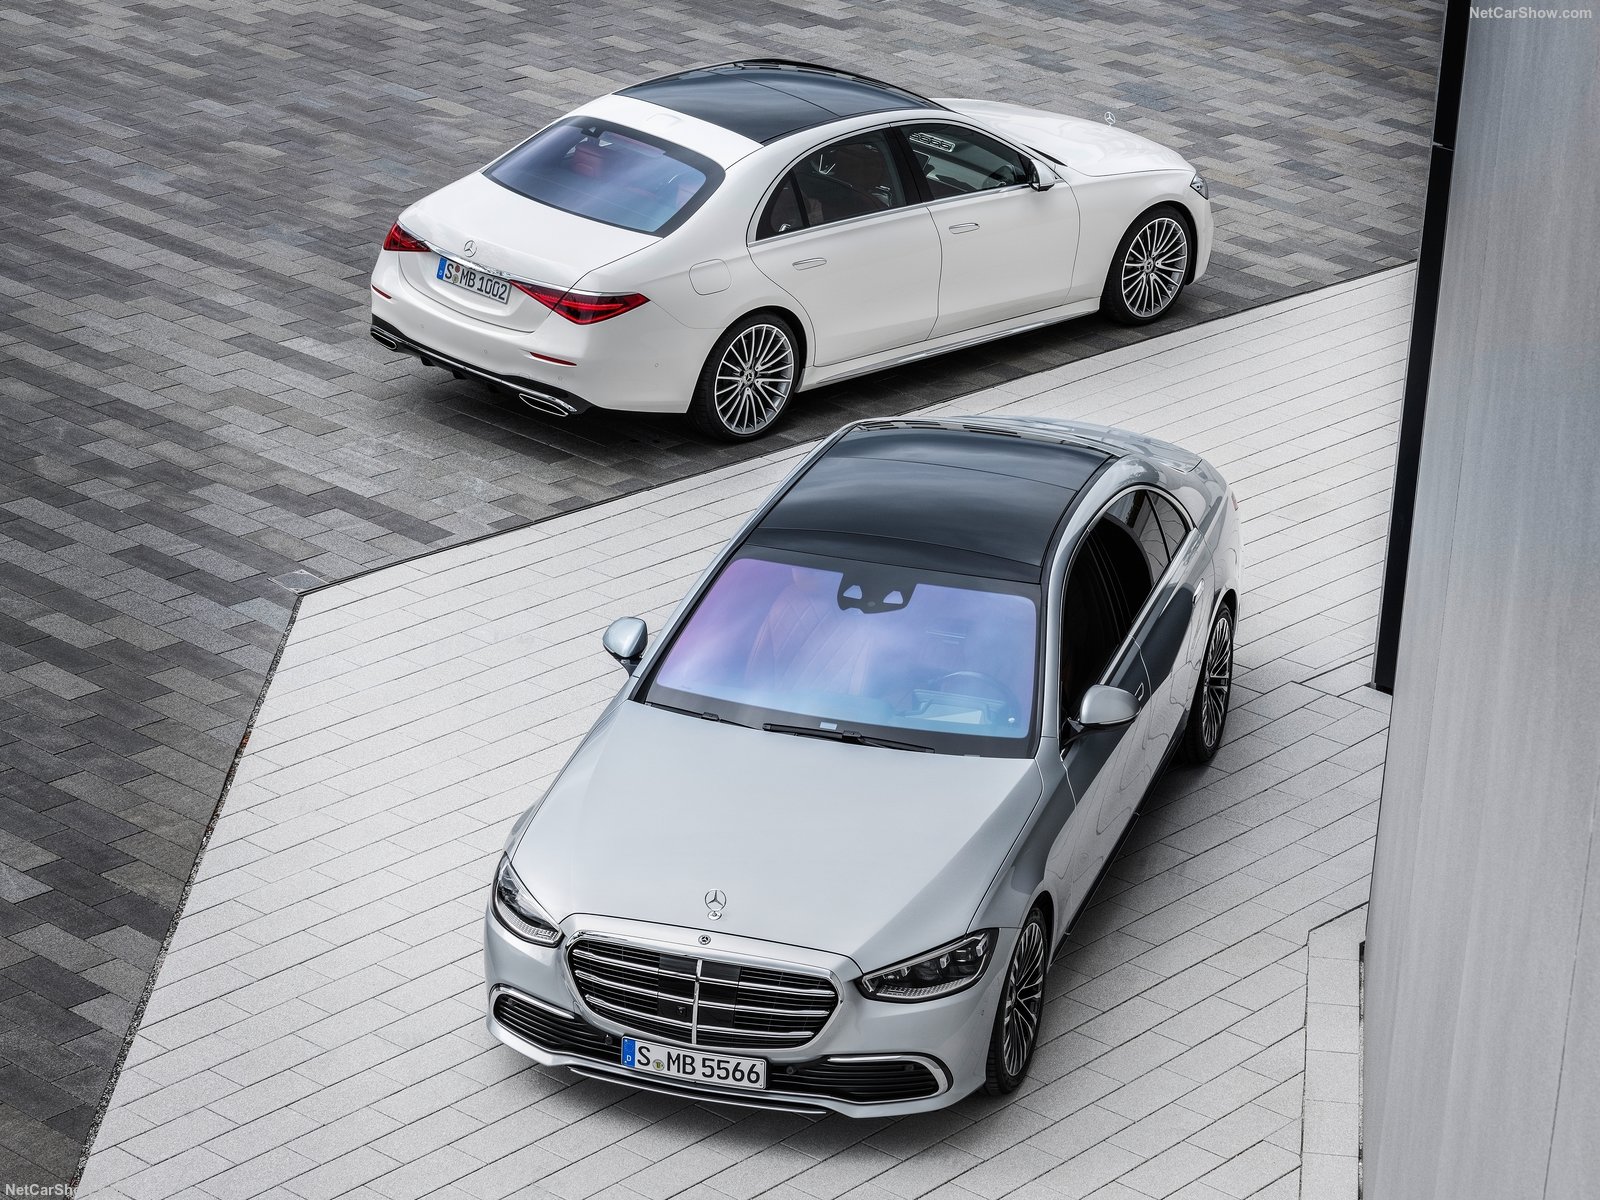 Đại lý chính hãng chào bán Mercedes-Benz S-Class 2021, bắt đầu giao xe vào đầu năm sau 1